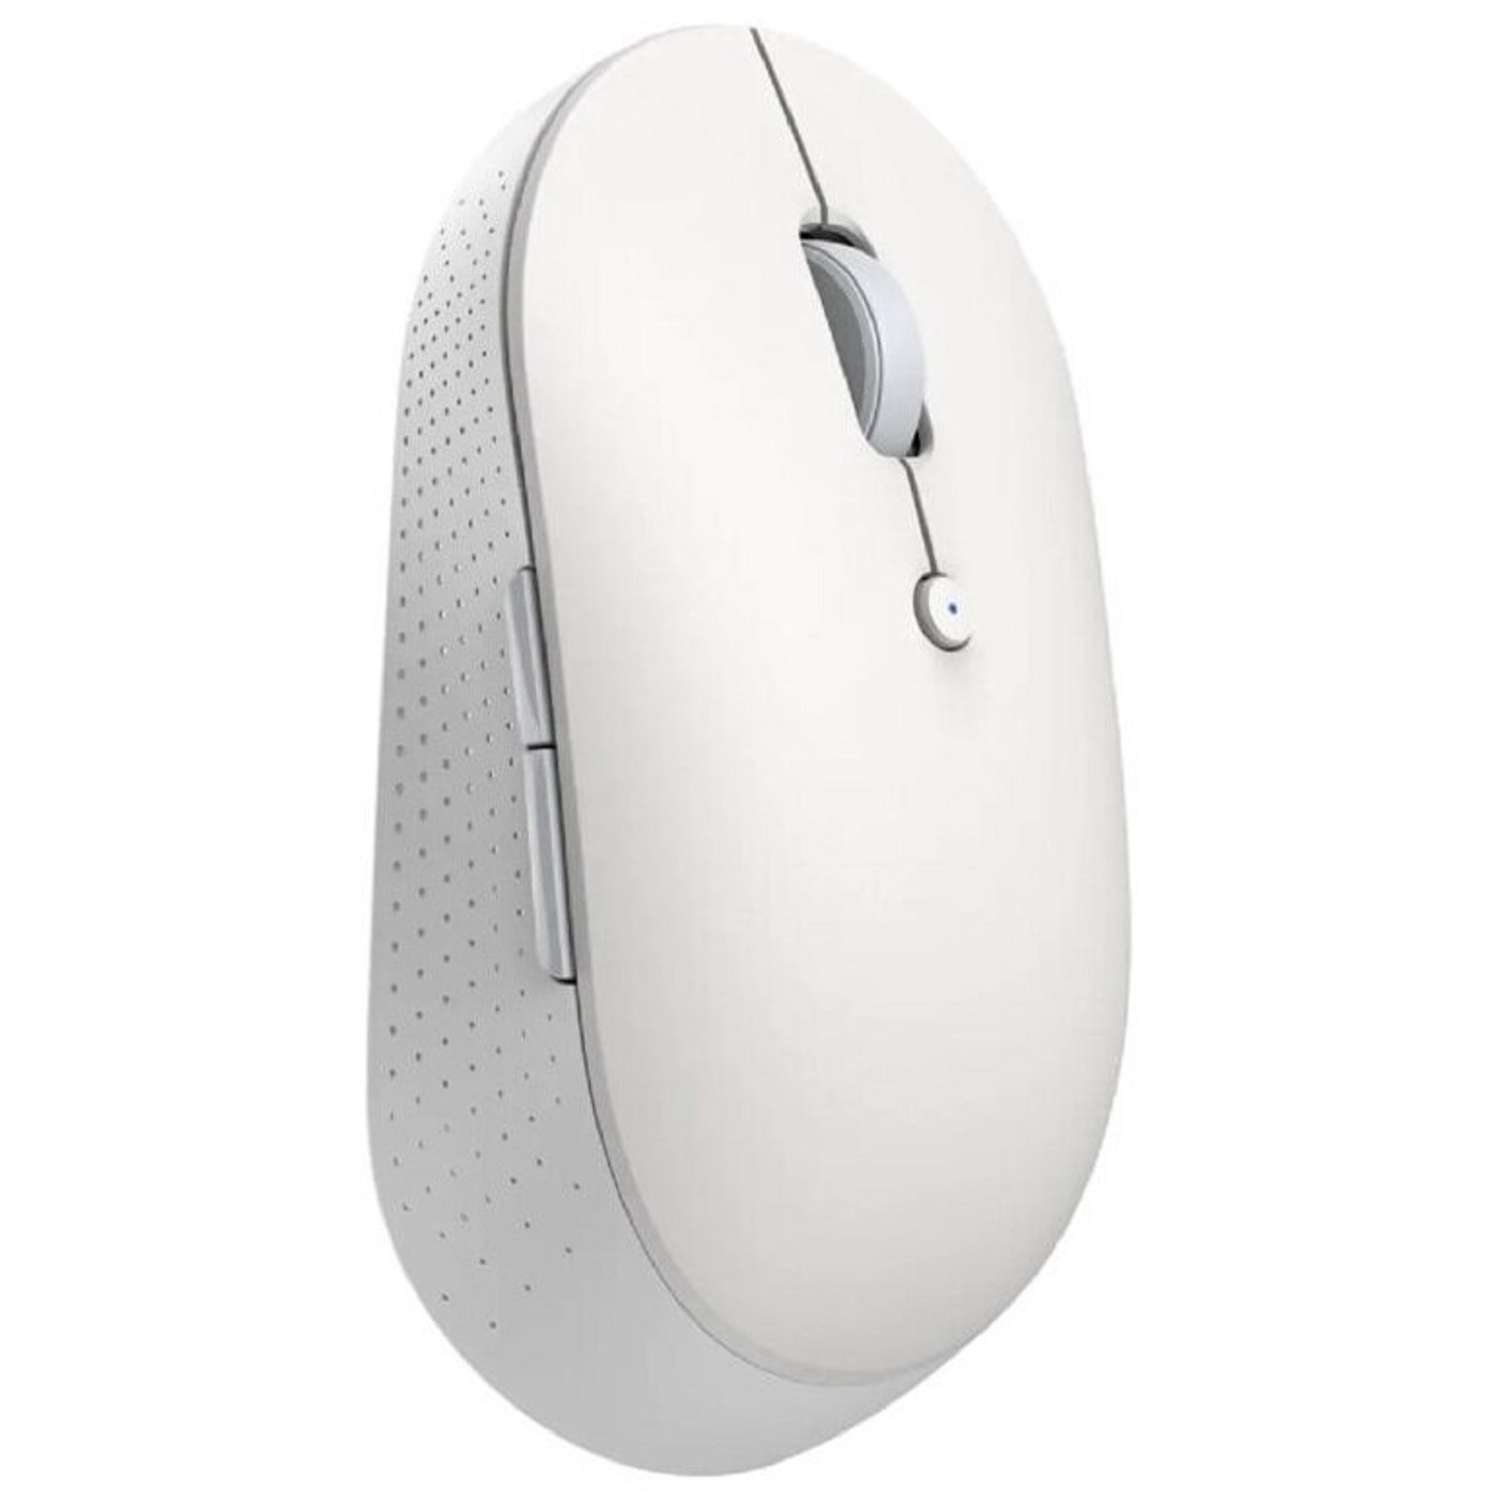 Мышь XIAOMI Mi Dual Mode Wireless Mouse Silent Edition беспроводная 1300 dpi usb белая - фото 2